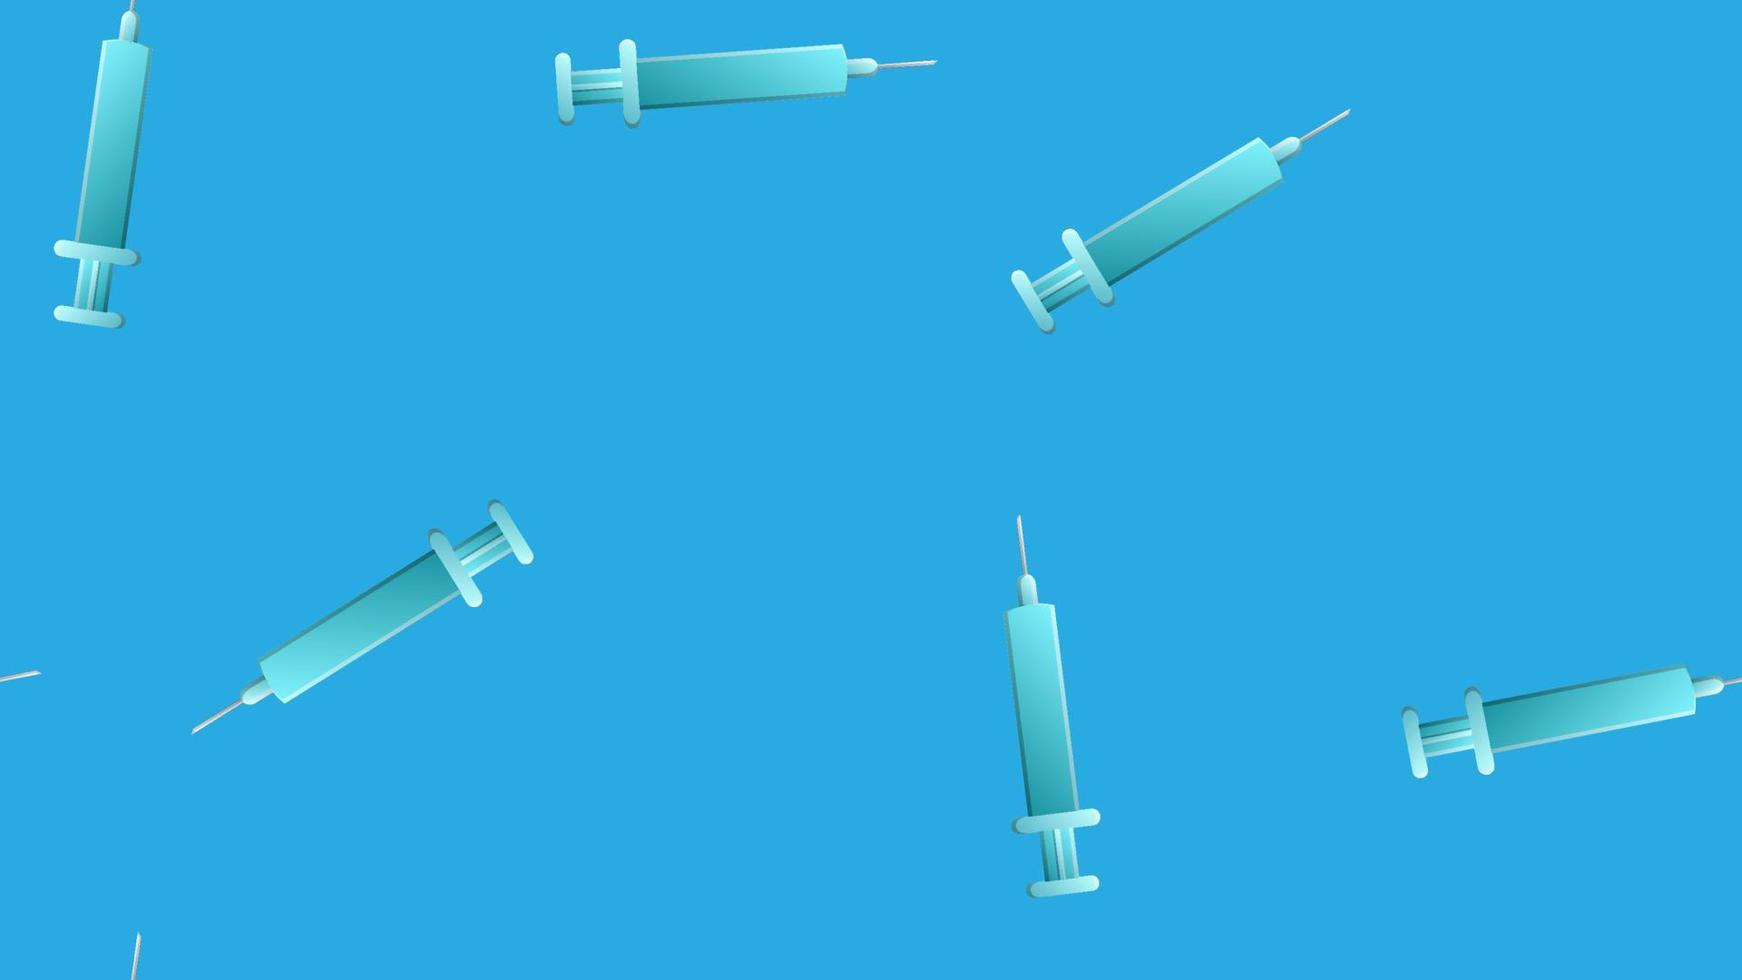 modèle harmonieux sans fin d'articles médicaux scientifiques médicaux de seringues tranchantes jetables pharmacologiques pour injections et vaccins sur fond bleu. illustration vectorielle vecteur